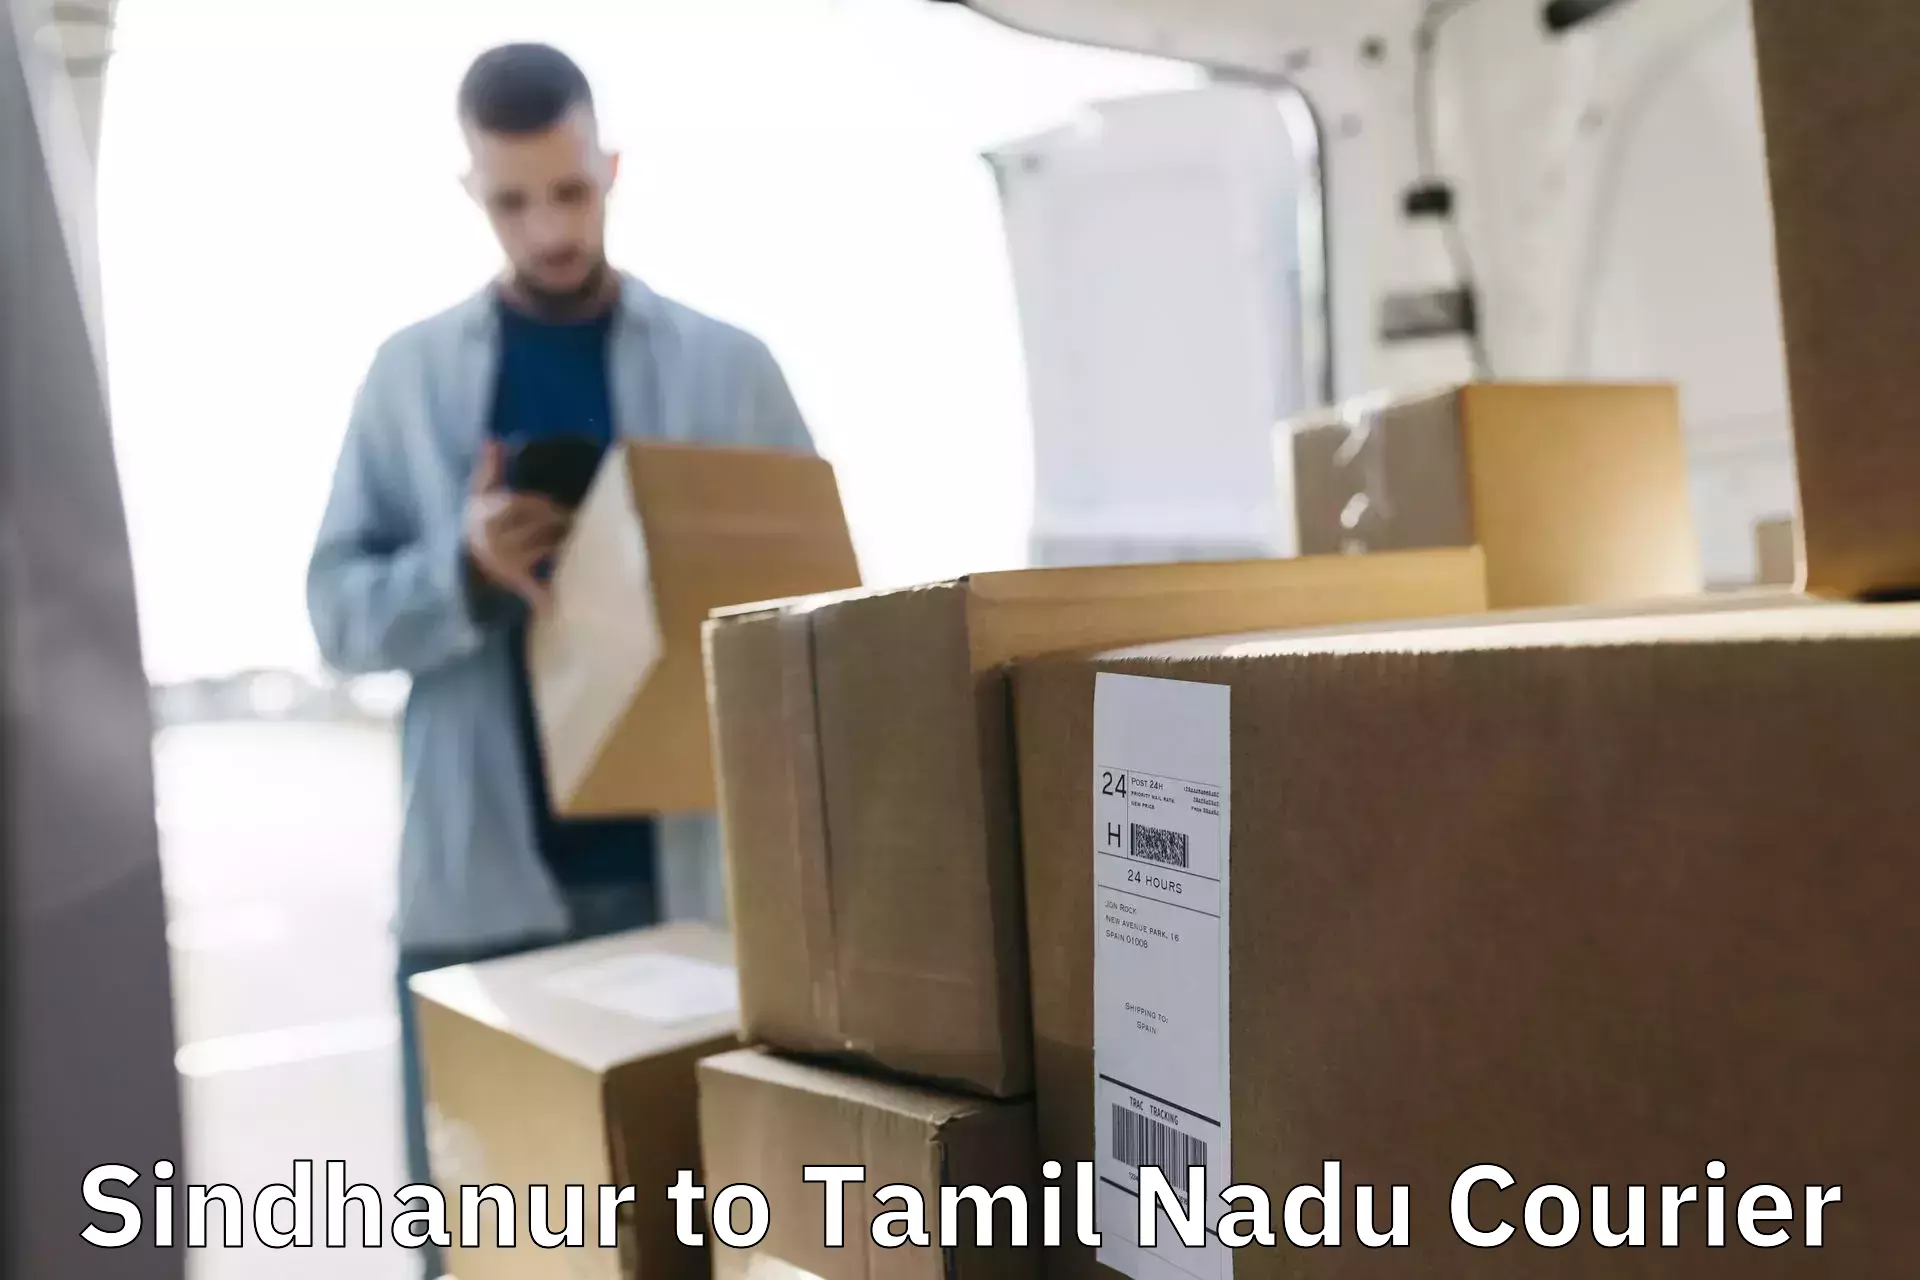 Professional courier services Sindhanur to Karaikudi